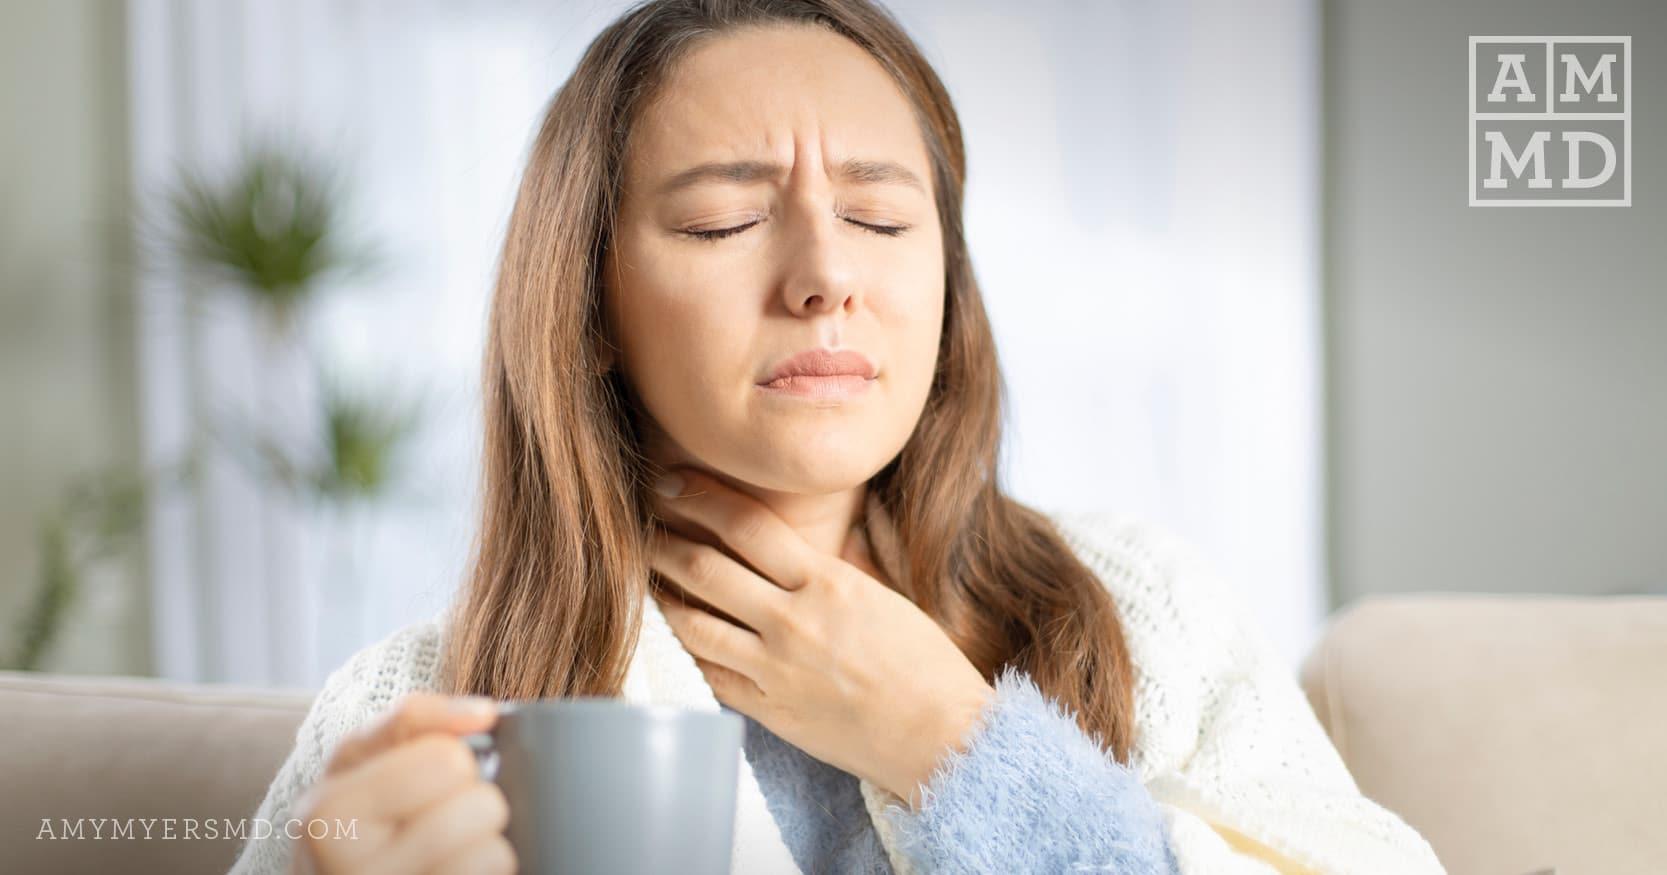 Cold and Flu Season Tips